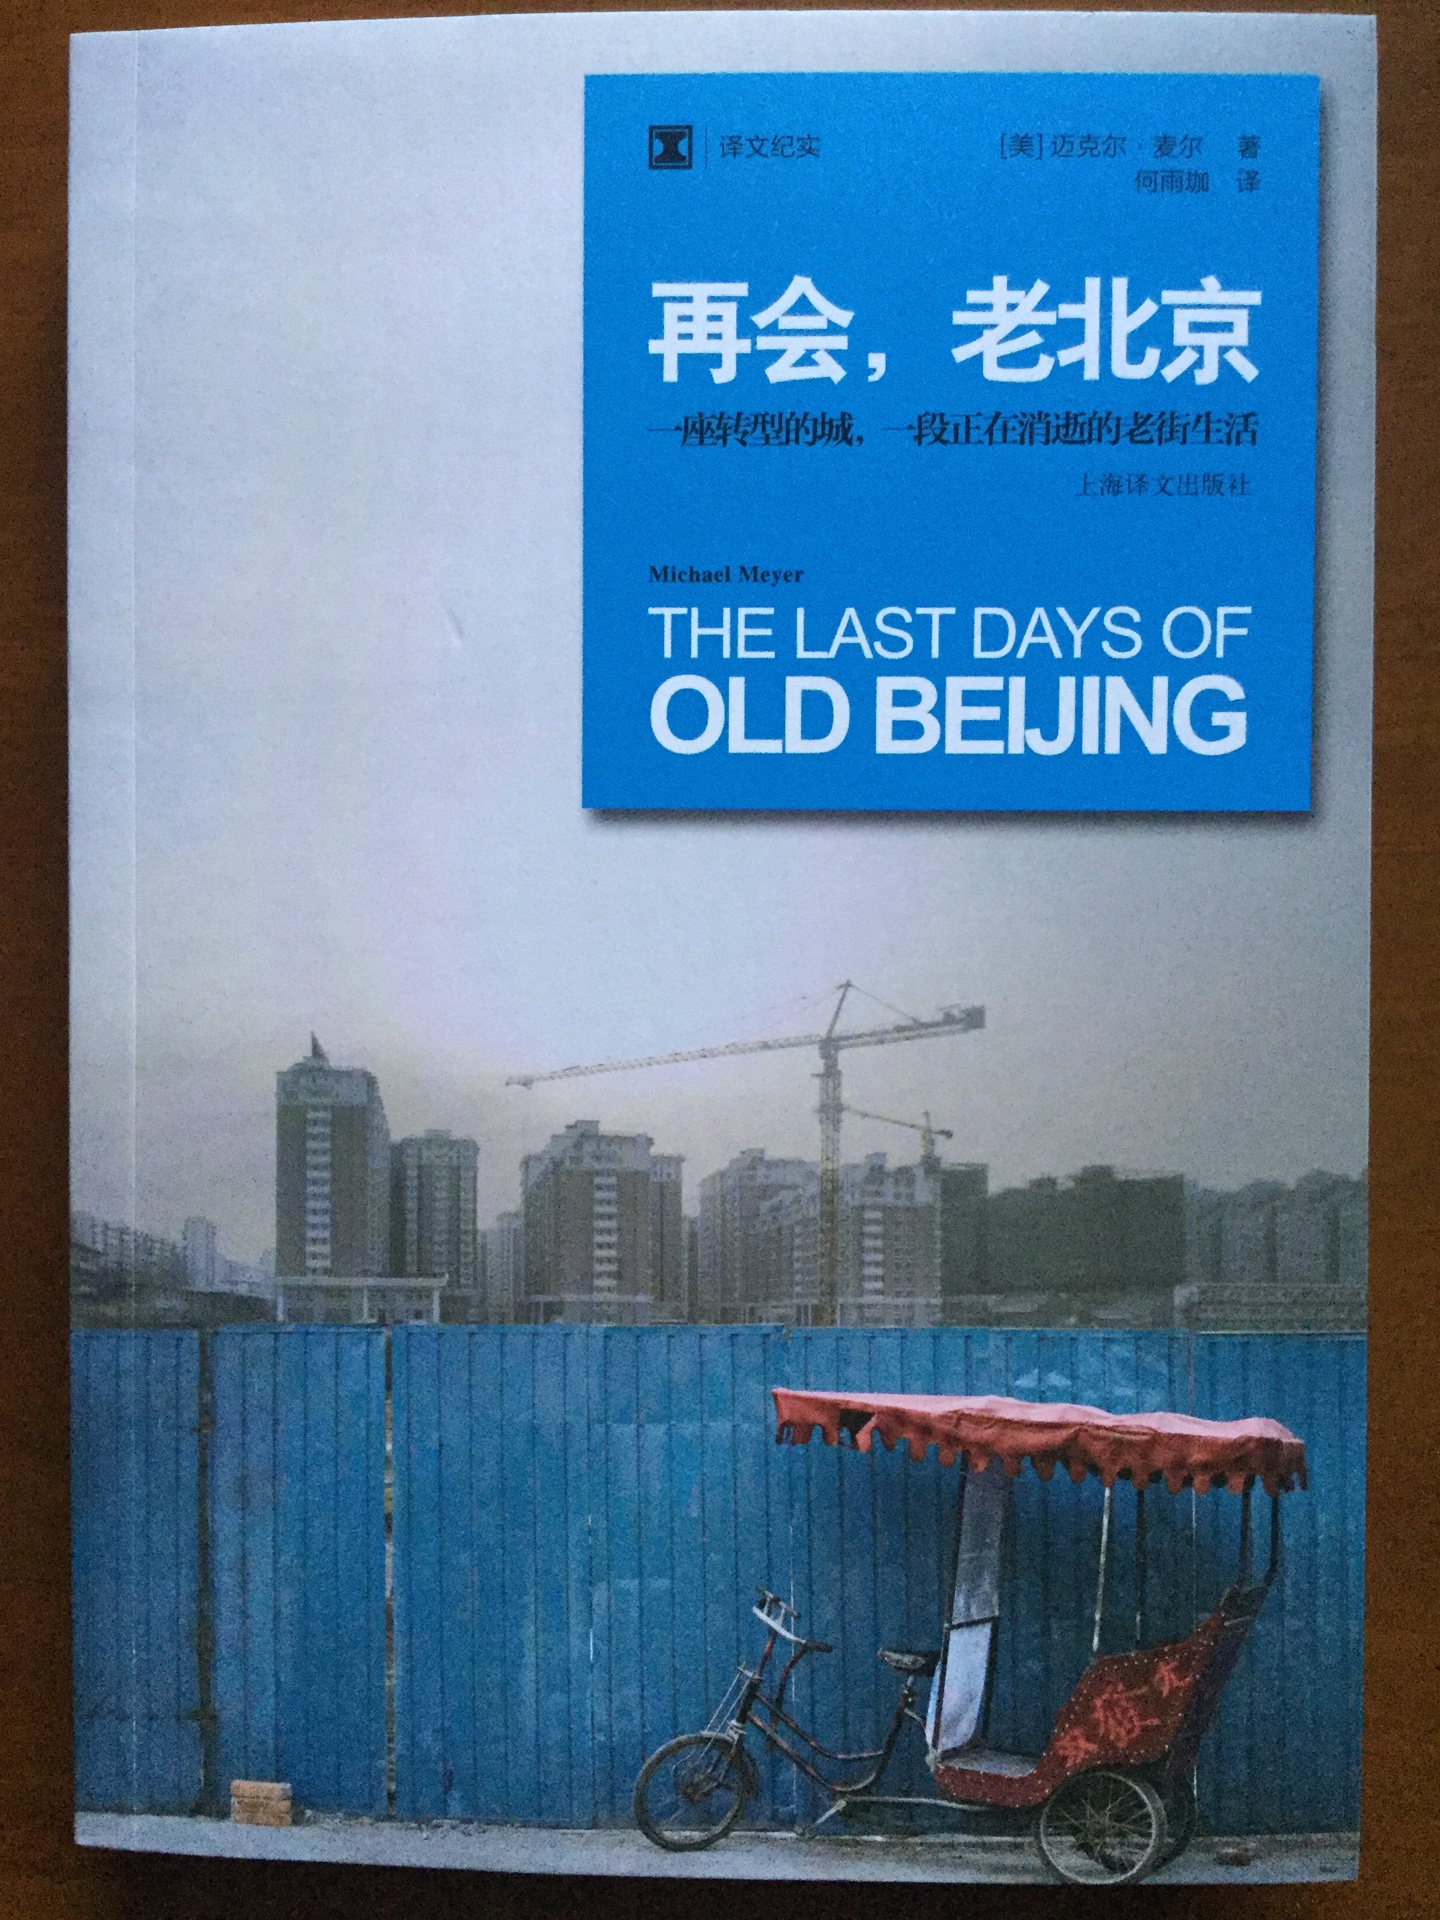 连外国人都知道老北京要再会了，为什么我们中国人自己不知道保留老北京呢？为什么老北京不能像欧洲的那些国家一样保留自己城市的文化和特色呢？四合院和老胡同越来越少，那北京的悠久历史要去哪儿找呢？只能去书中找了。